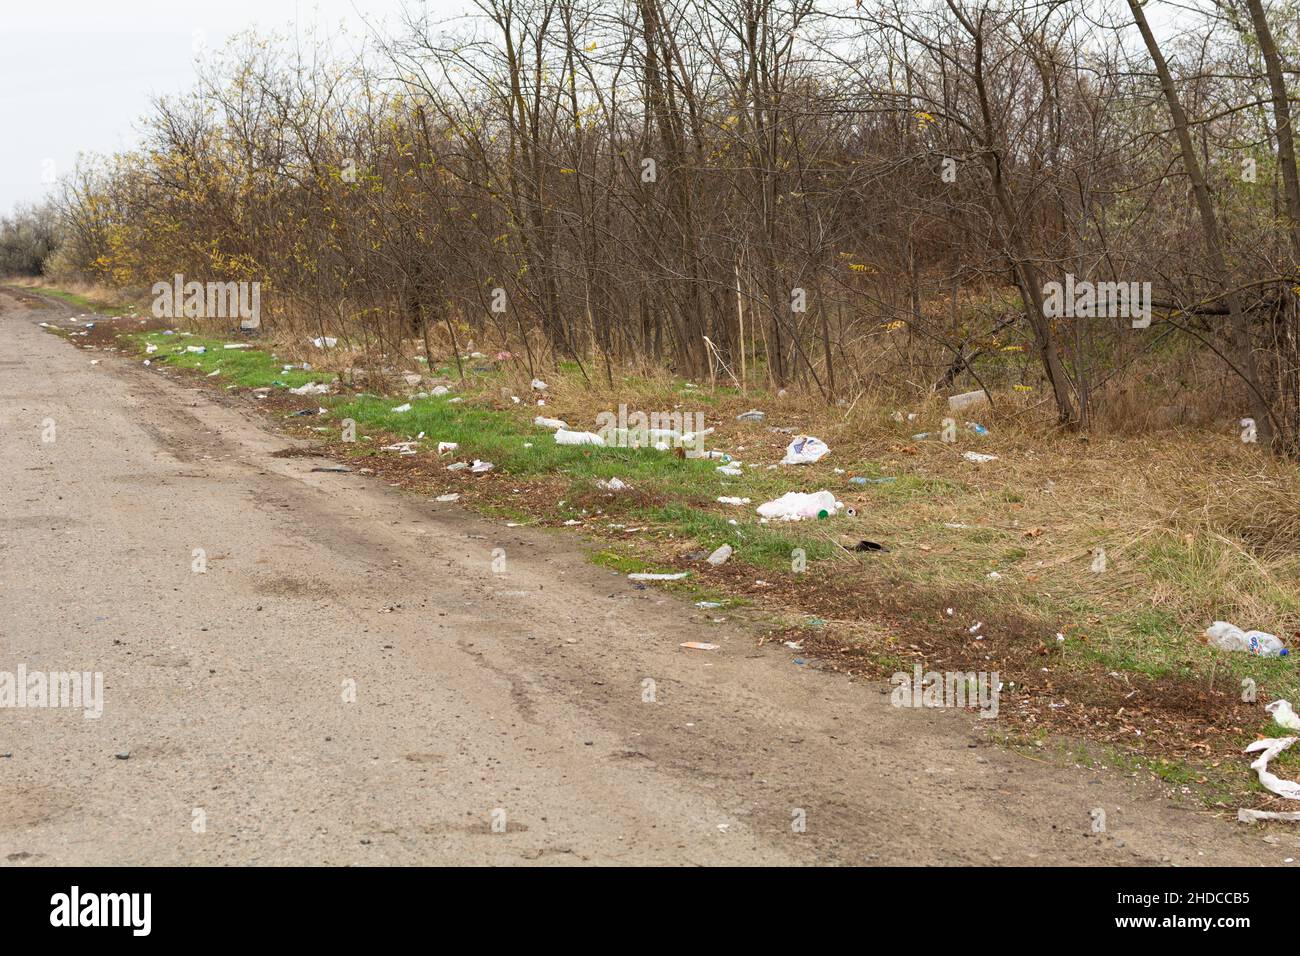 Odessa regione, Ucraina - 7 novembre 2021 spazzatura lungo la strada, plastica, bottiglie, sacchetti. Concetto ambientale. Salvare il pianeta. Foto Stock